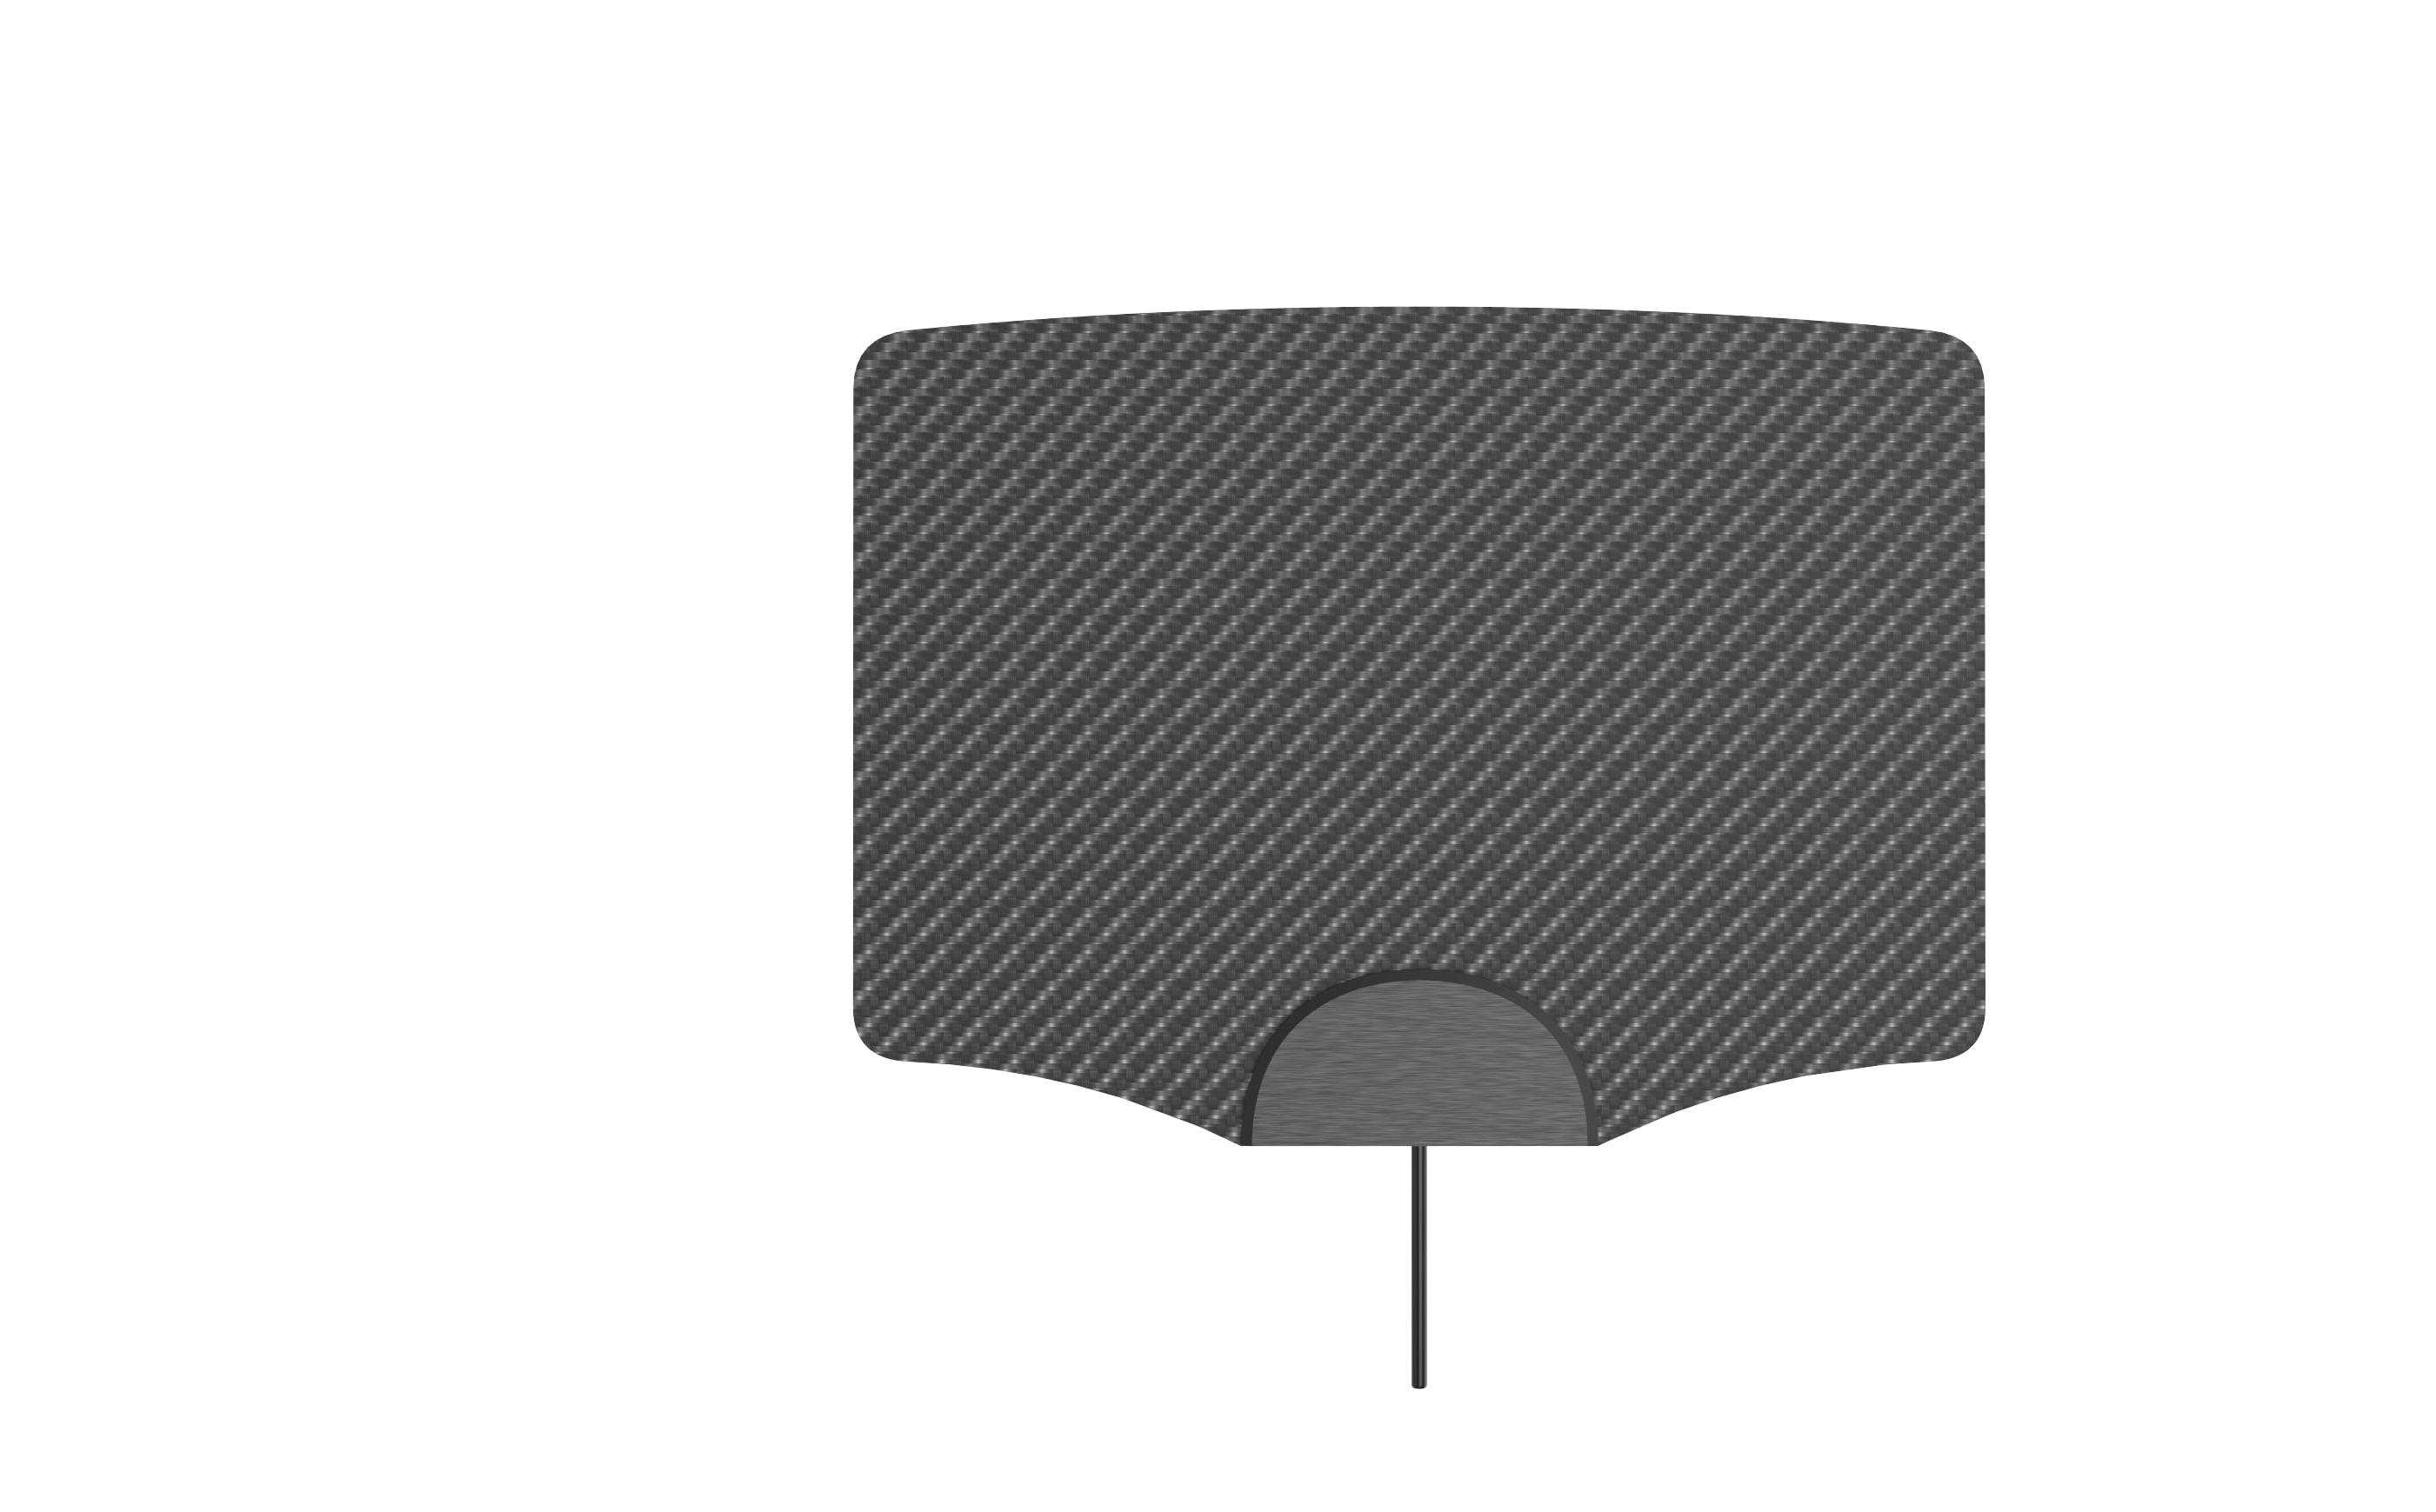 paper thin TV antenna